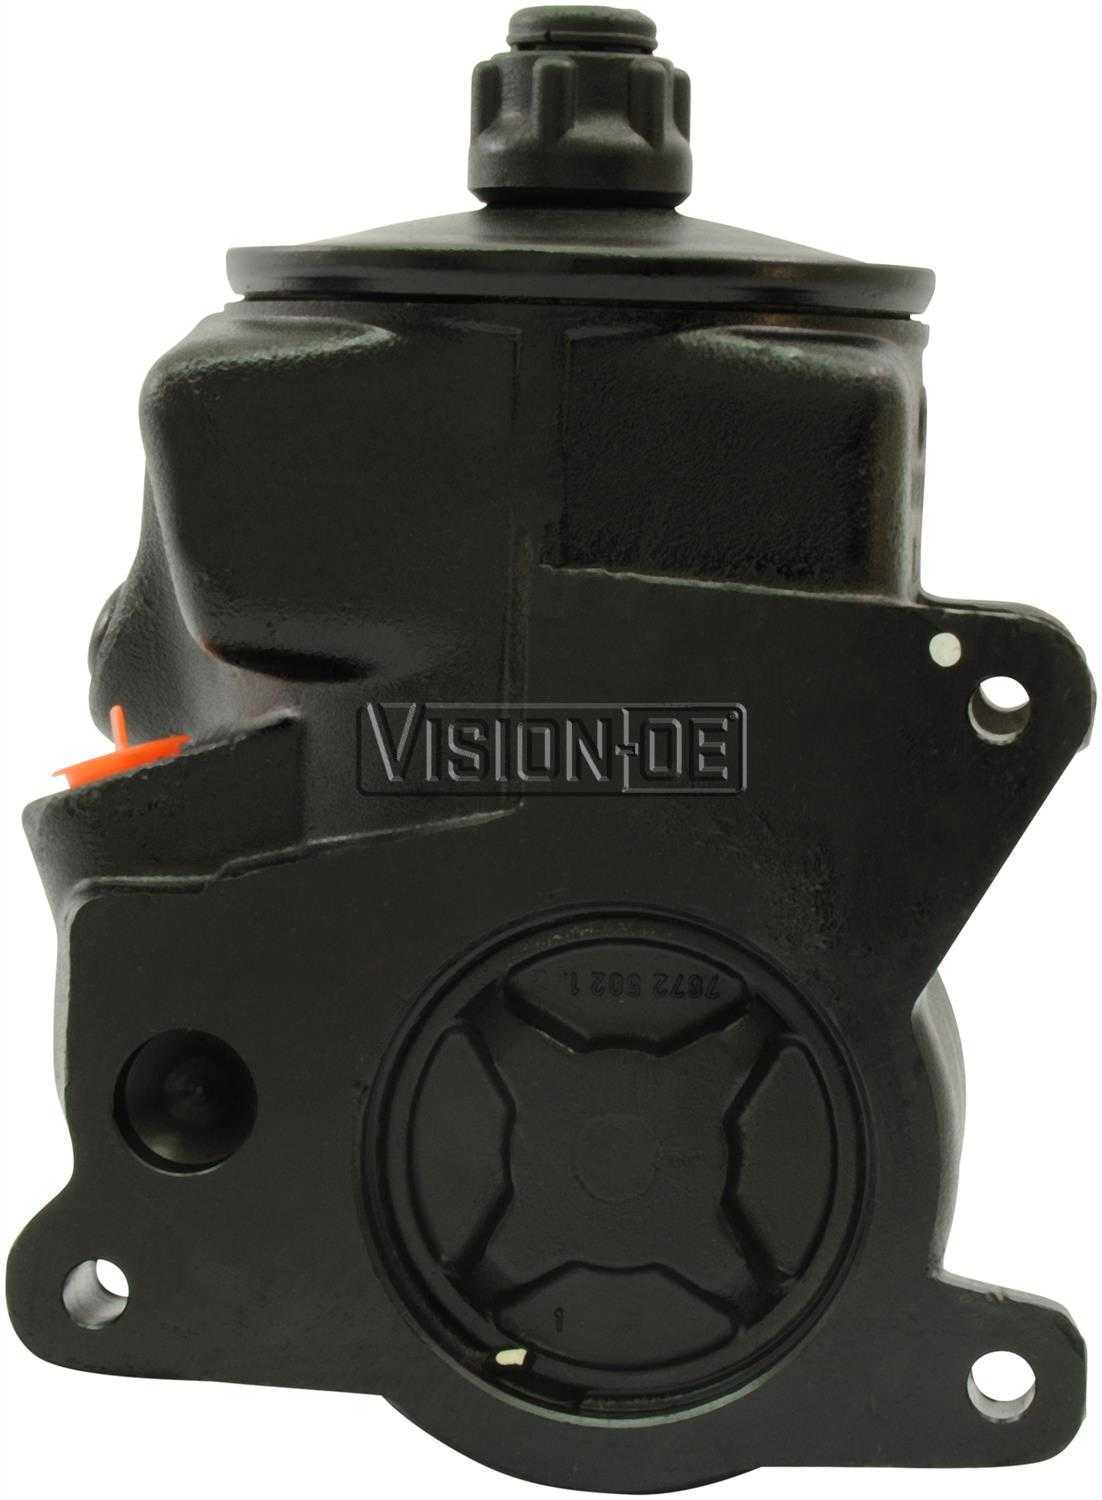 VISION-OE - Reman Power Steering Pump - VOE 990-0421